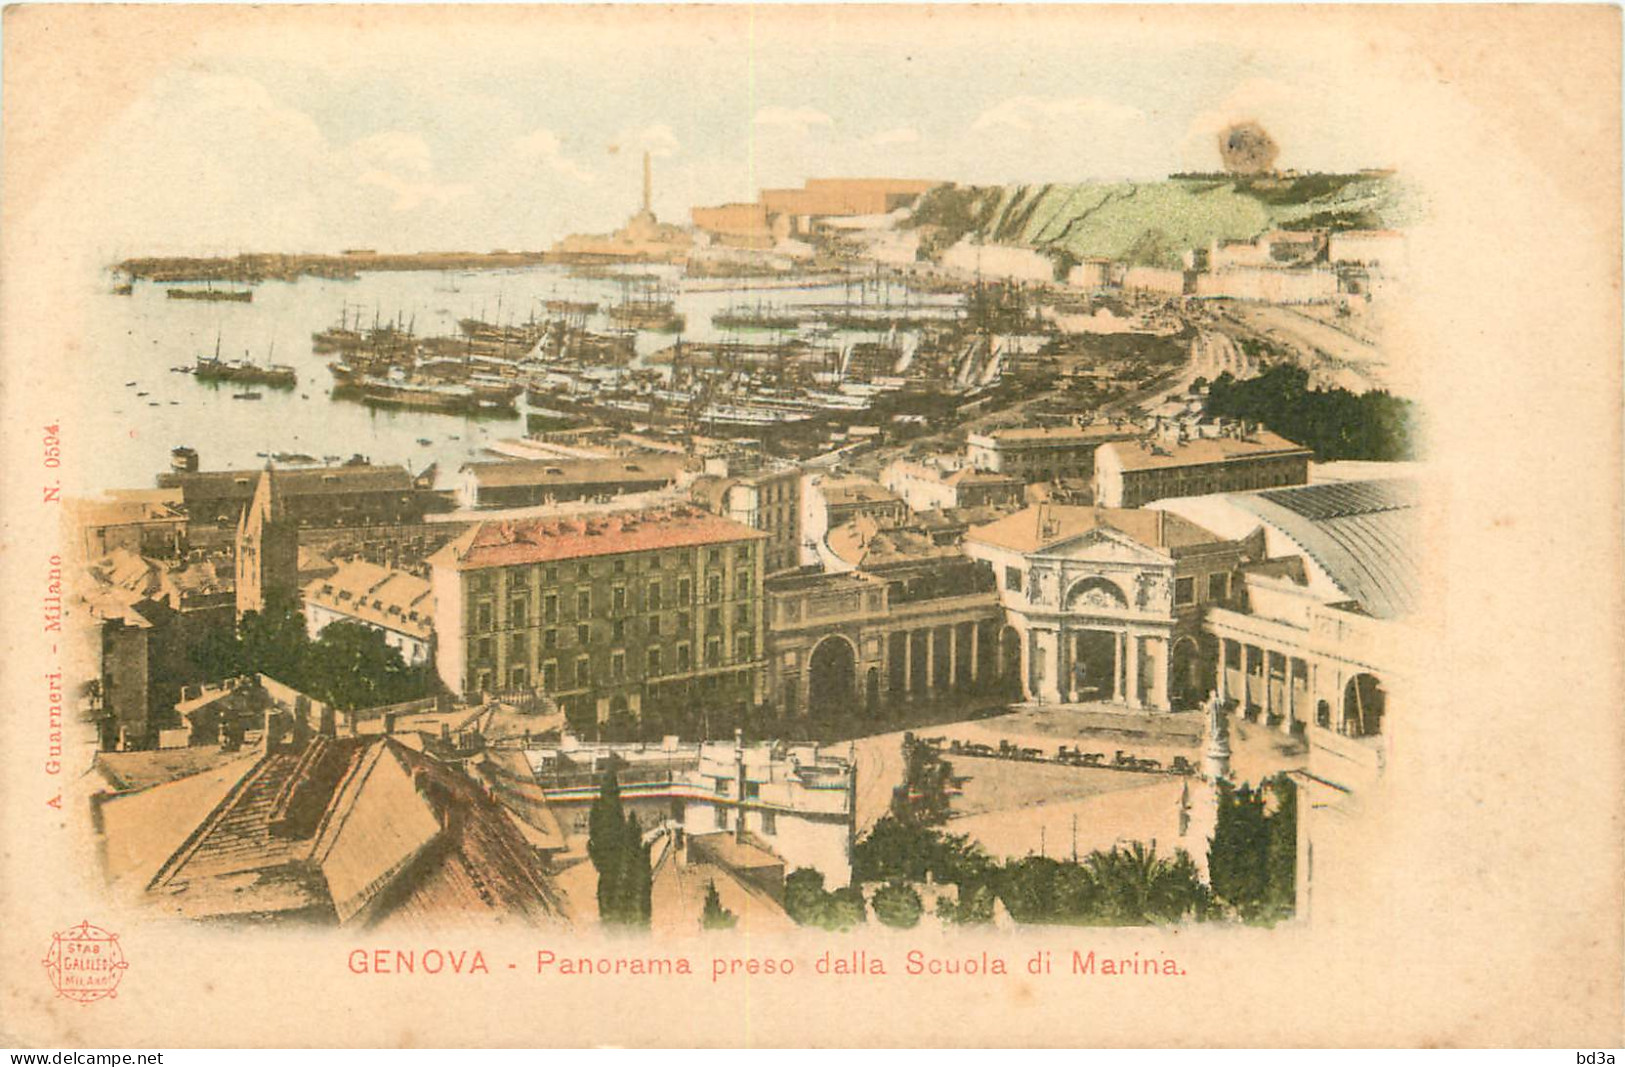  ITALIA  GENOVA  Panorama Preso Dalla Souola Di Marina - Genova (Genoa)